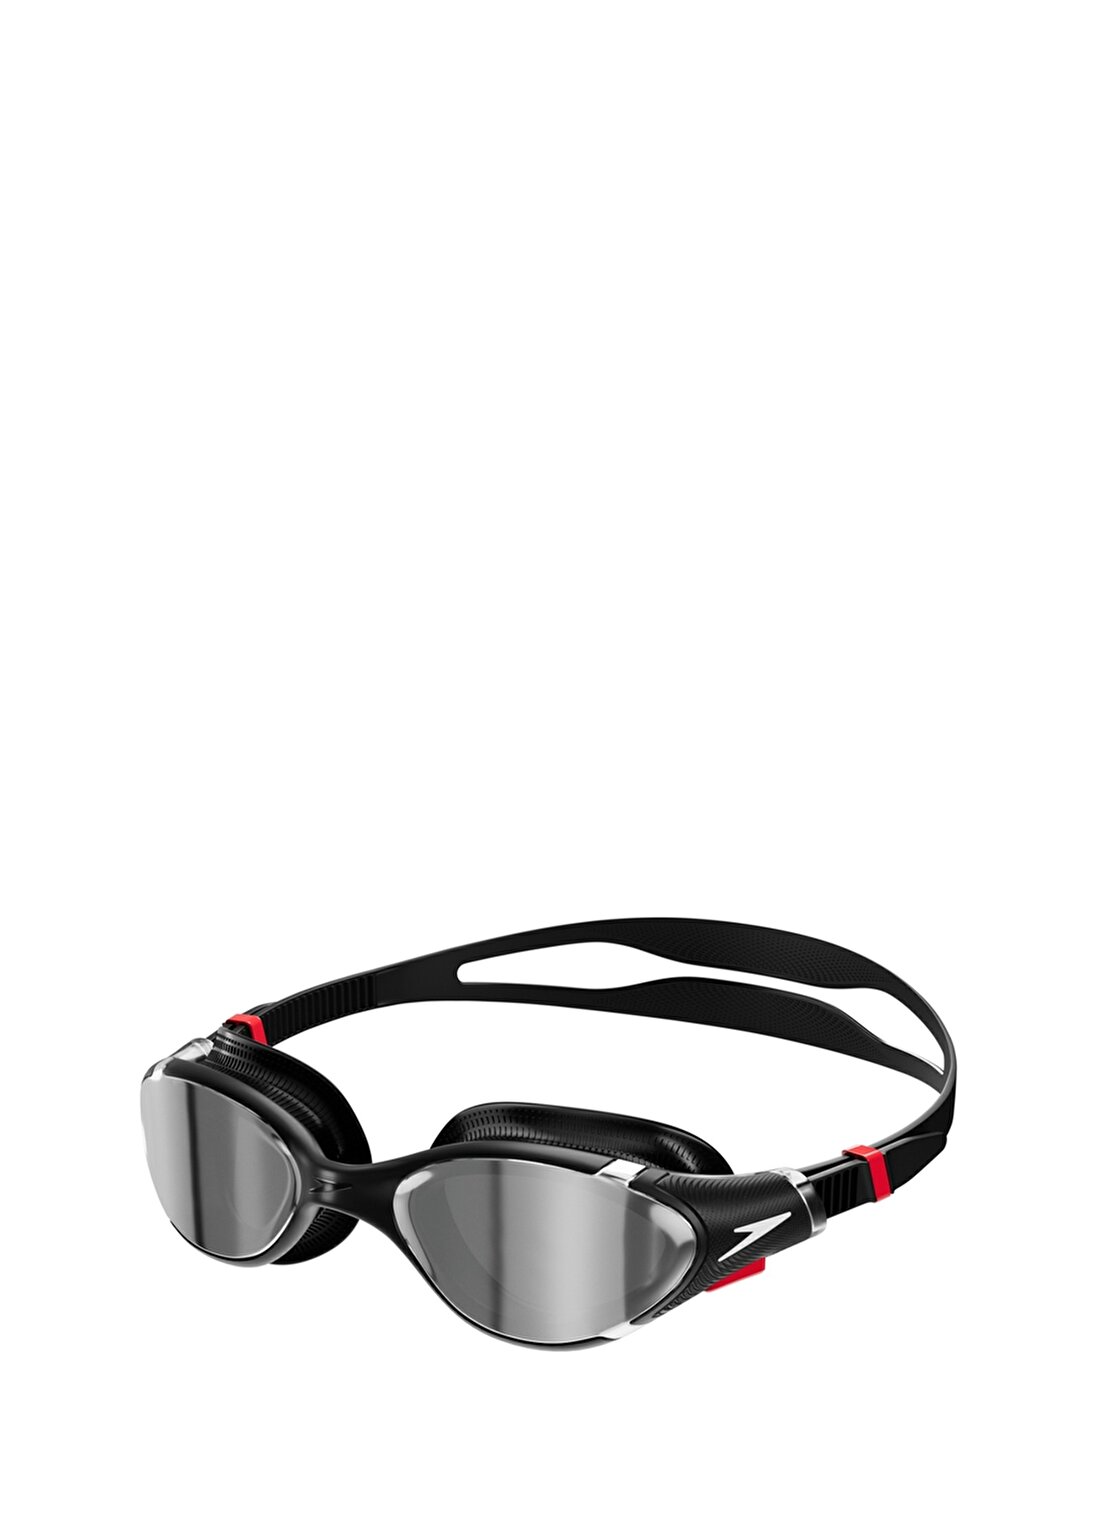 Speedo Siyah - Gümüş Yüzücü Gözlüğü 8-002331A273-SPEEDO BIOFUSE REFLX M